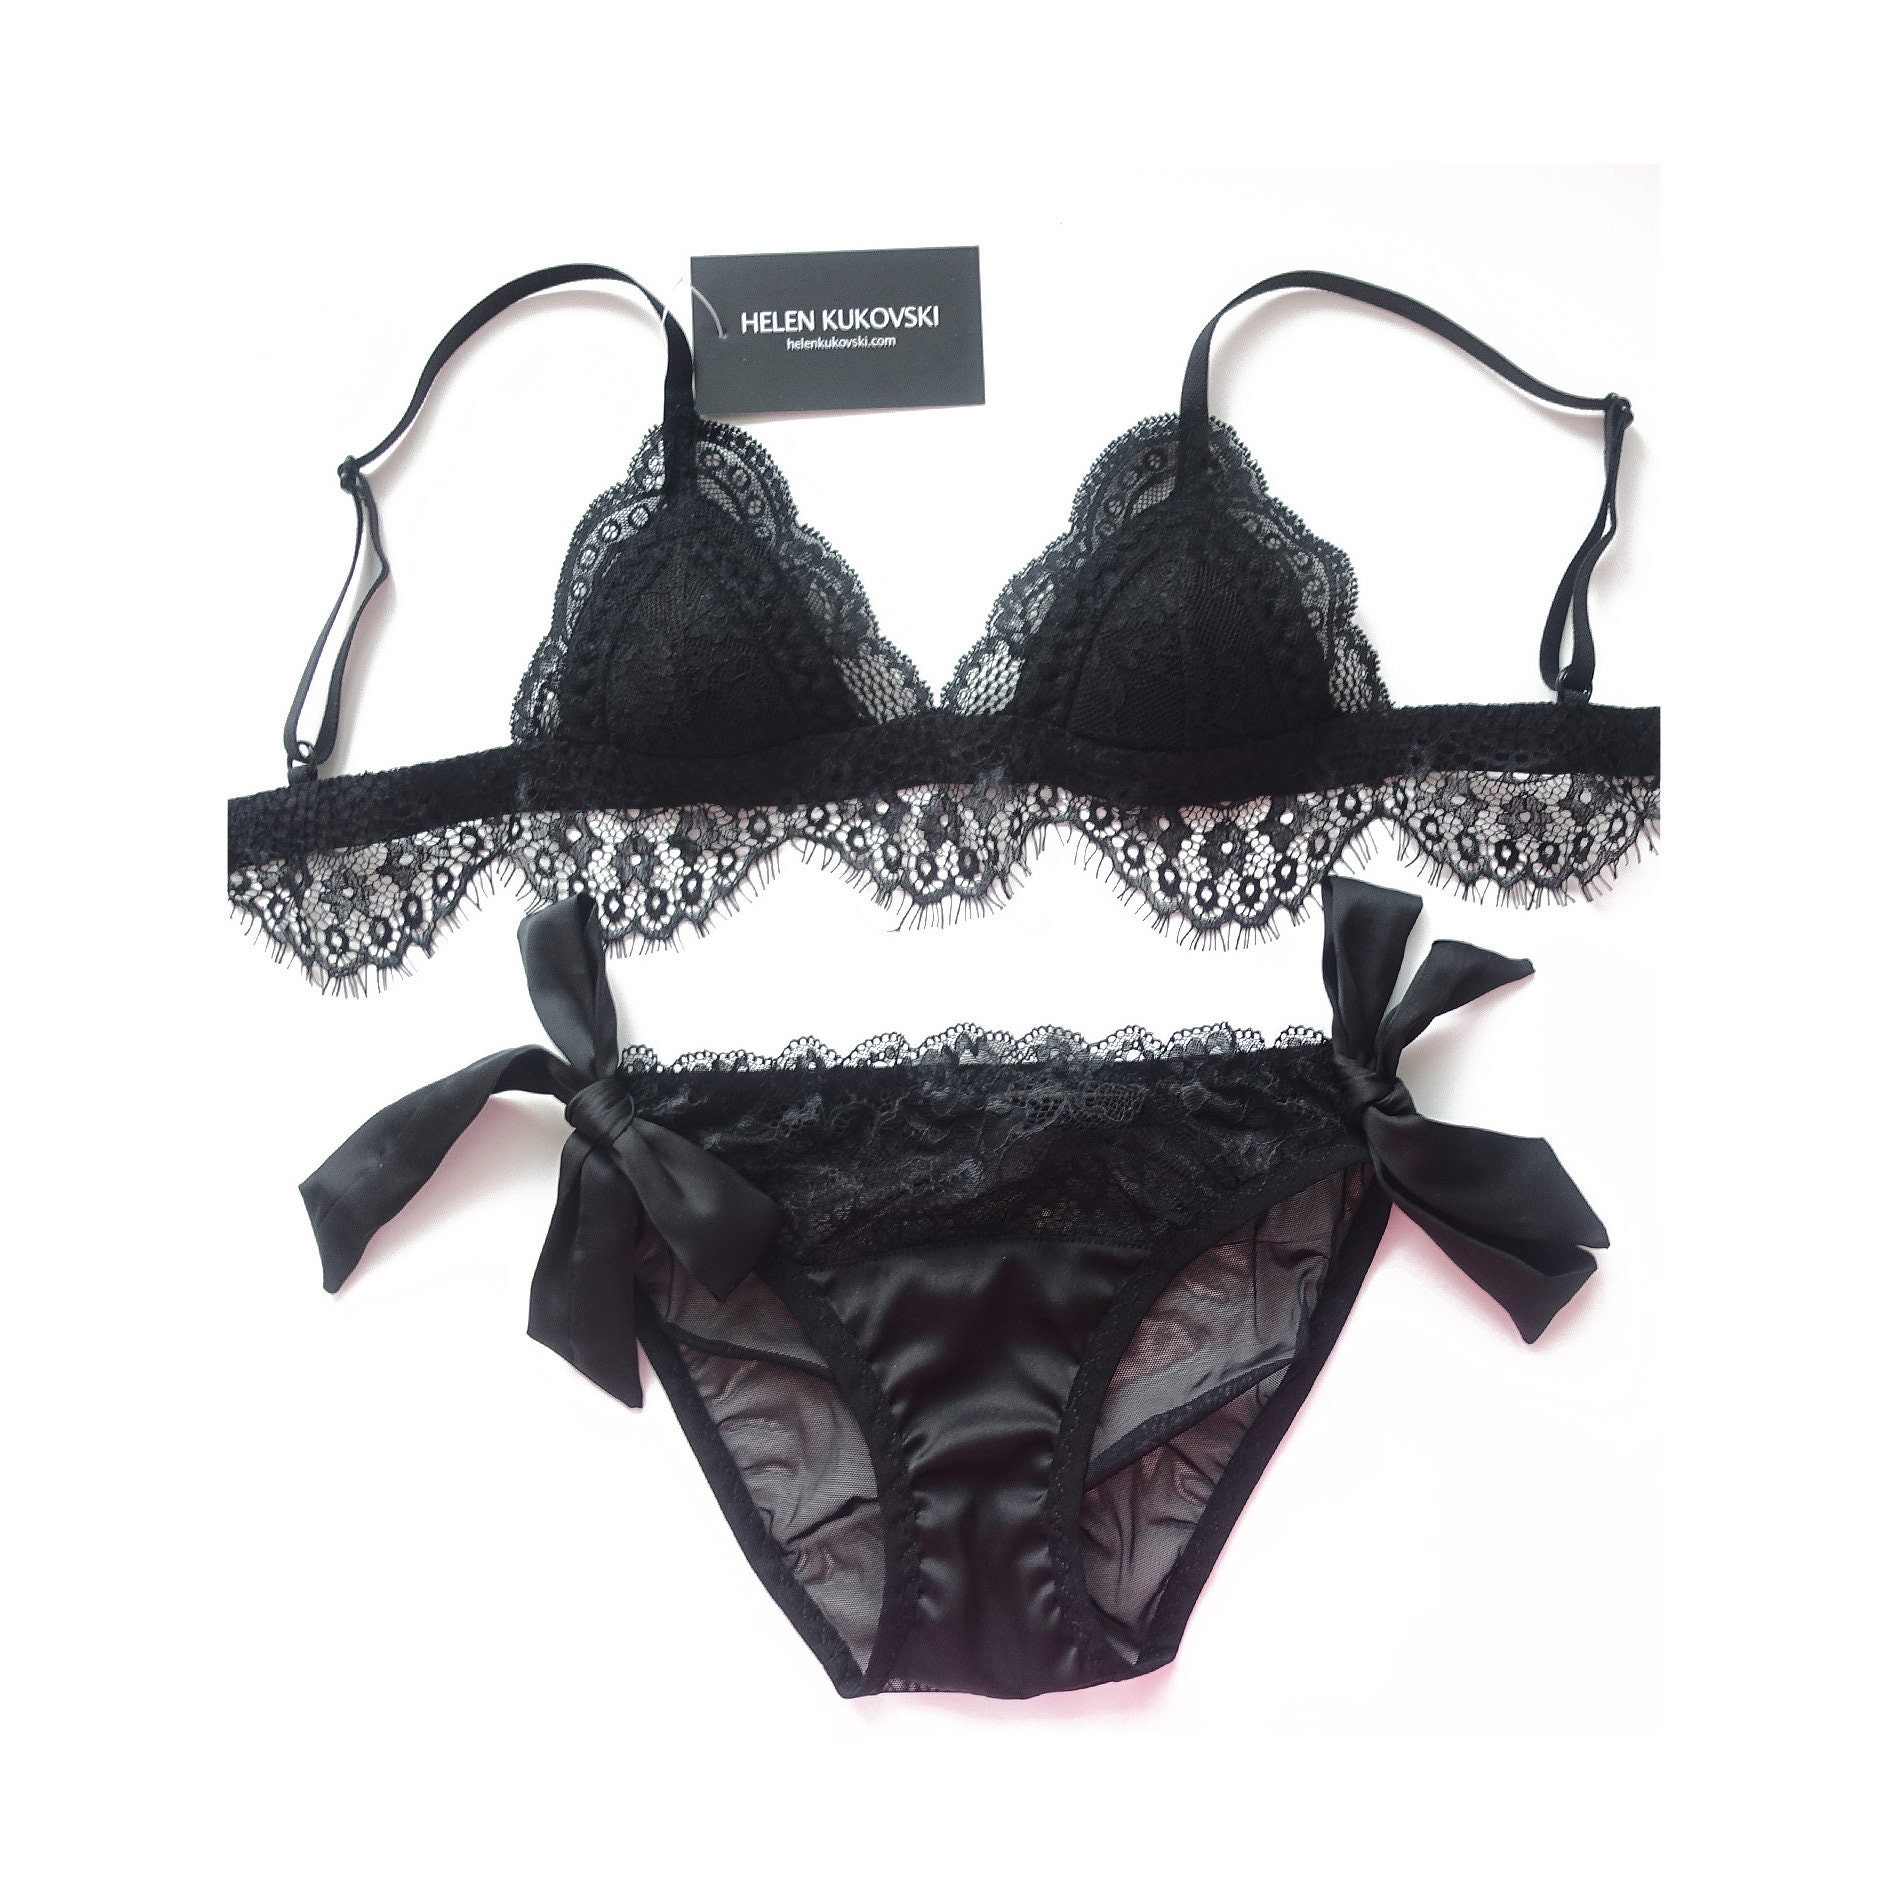 Lace lingerie set / black lace lingerie / satin lingerie | Etsy